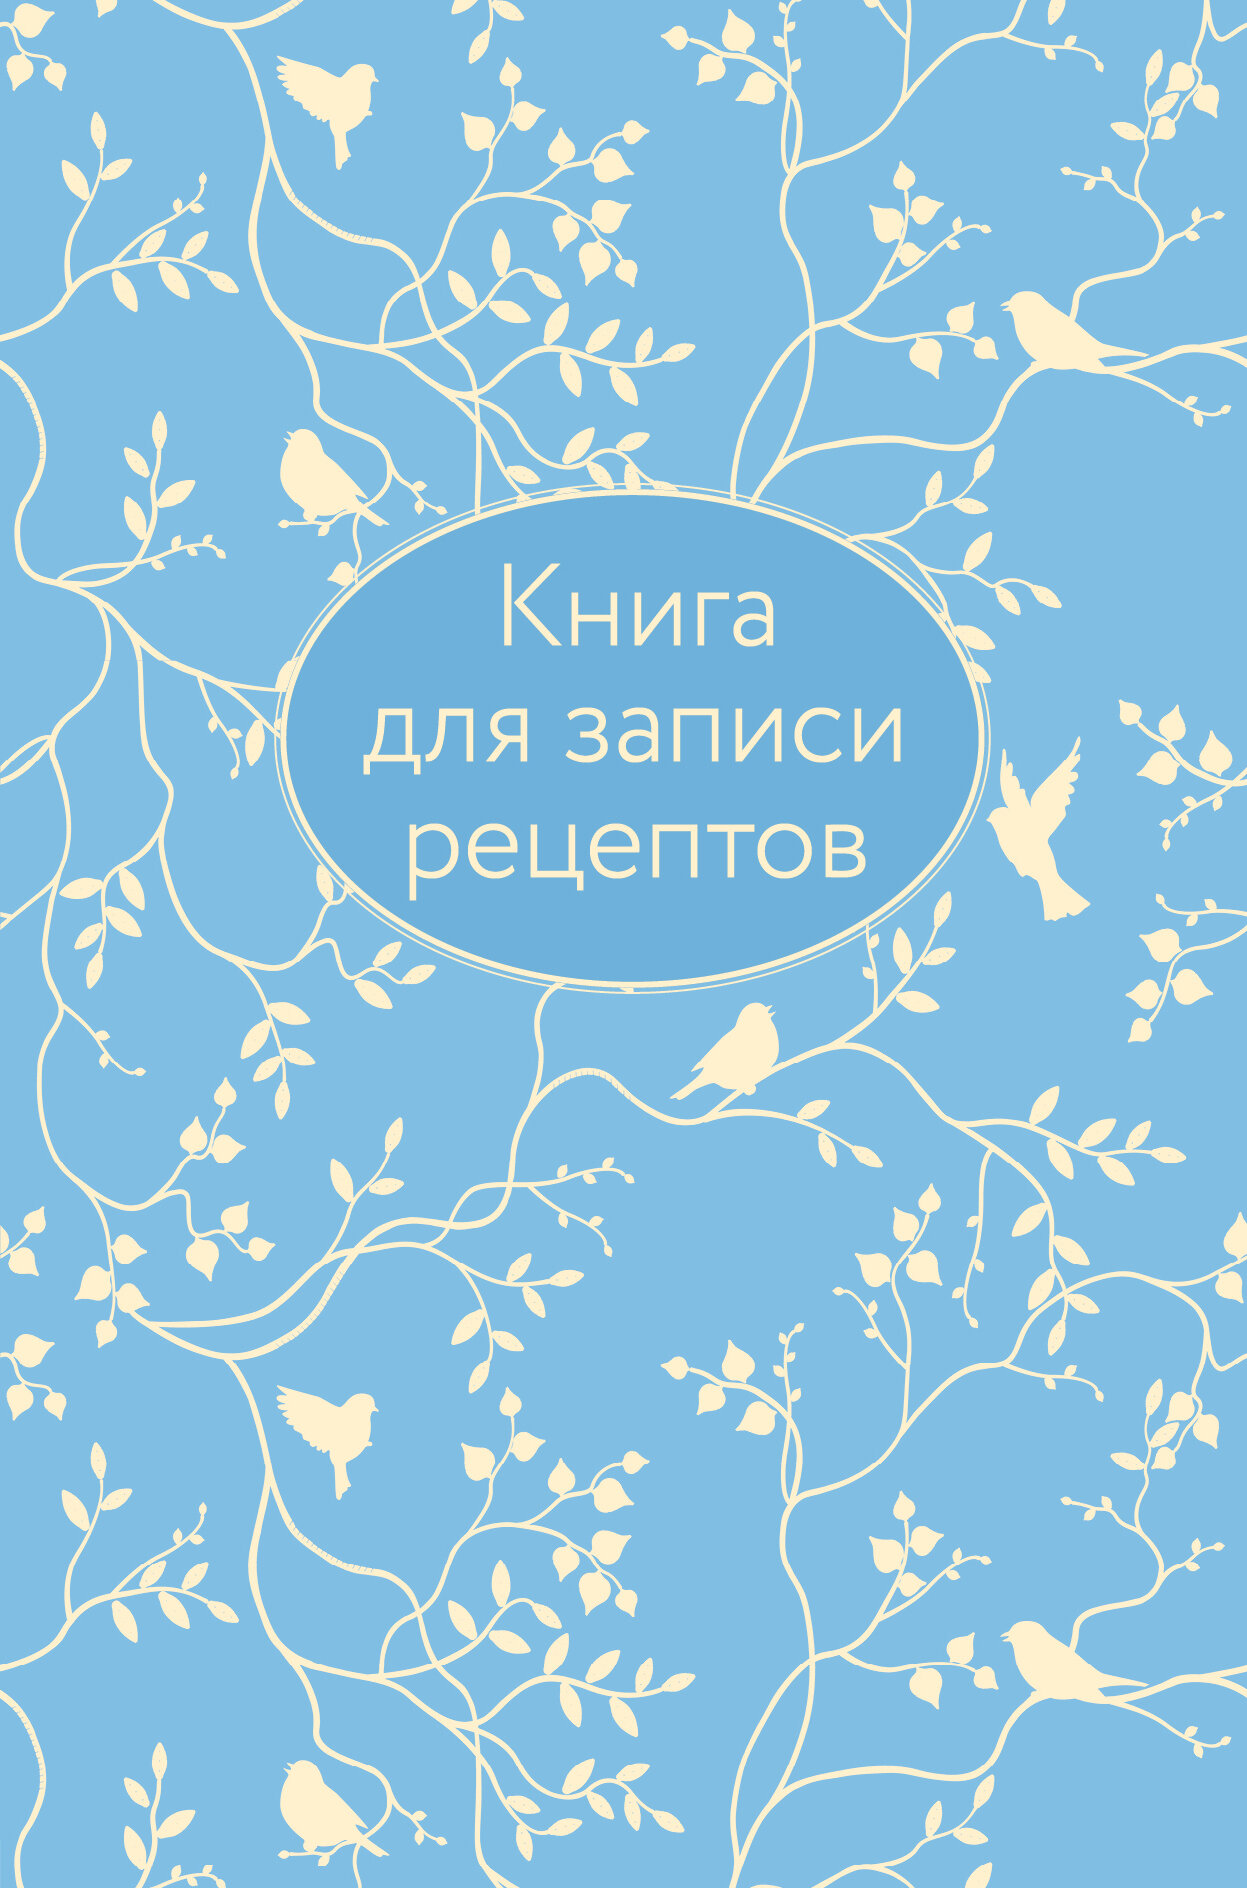 Книга для записи рецептов (голубая с фольгой) - фото №10